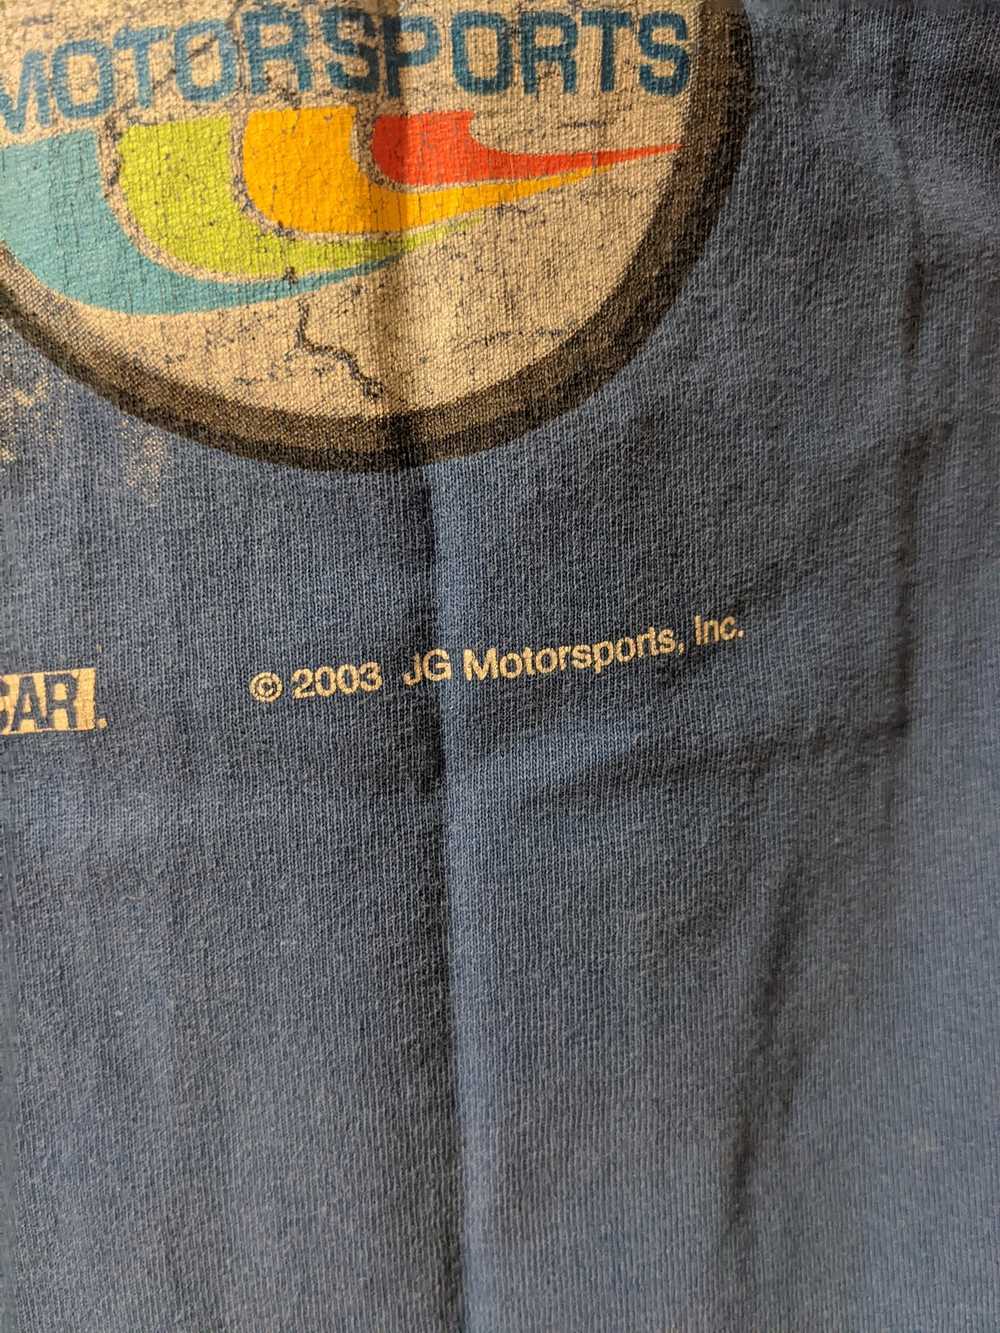 NASCAR × Vintage Vintage 2003 Jeff Gordon NASCAR … - image 6